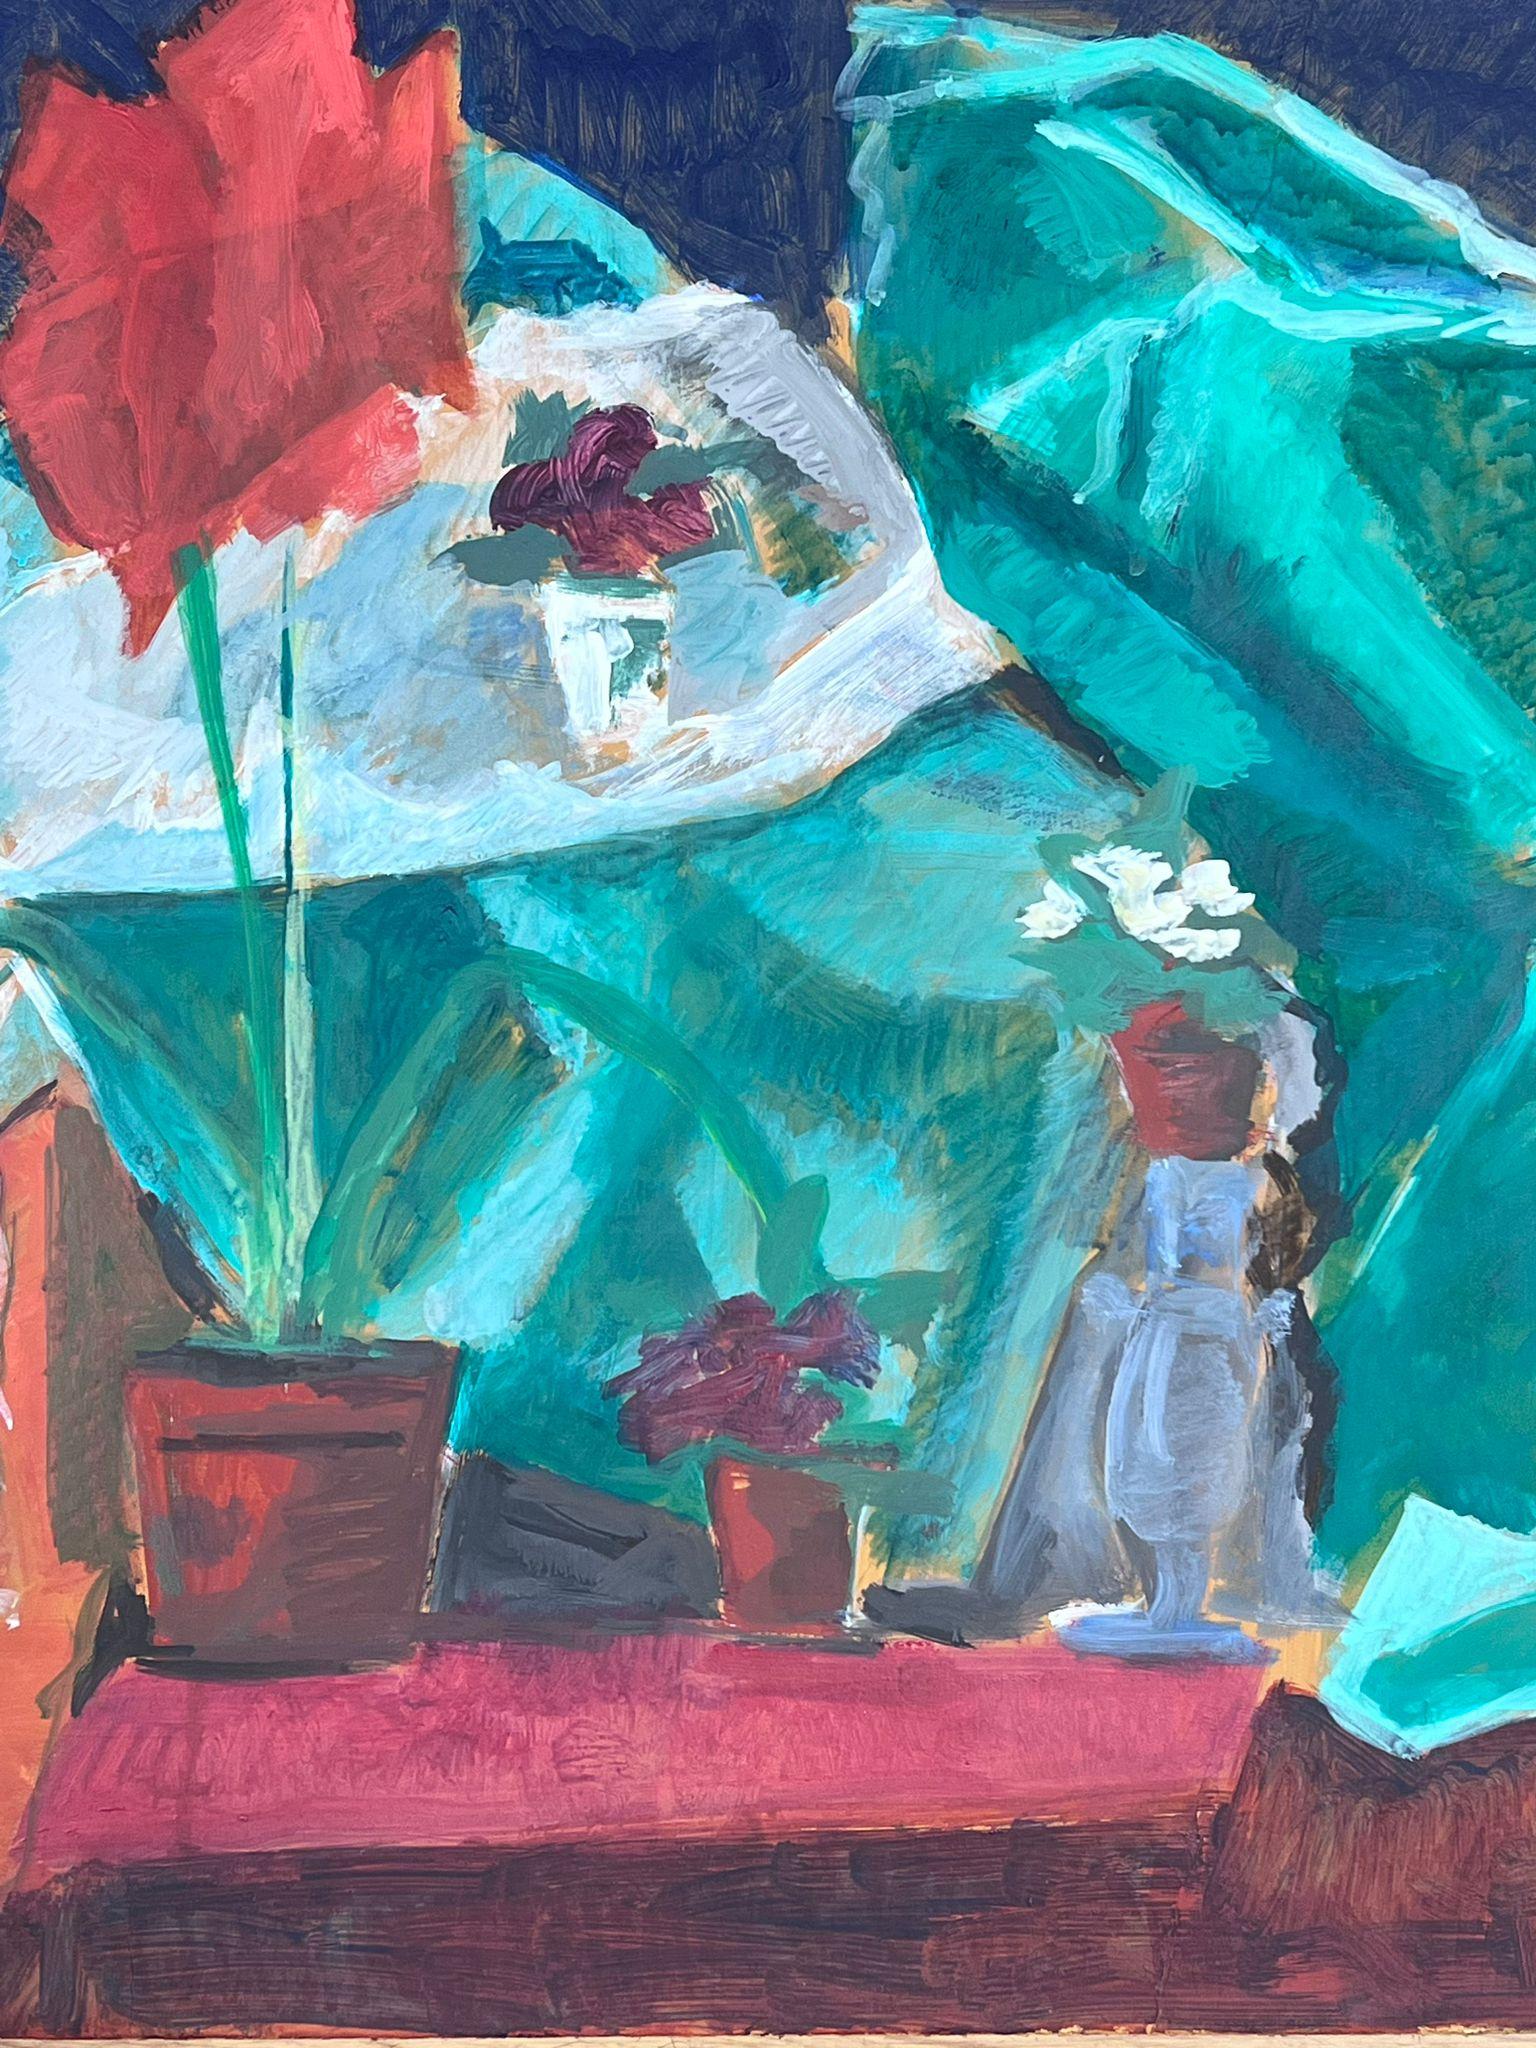 Rotes Pflanzenstillleben
von Guy Nicod
(Französisch 1923 - 2021)
Öl auf Künstlerpapier, ungerahmt
Gemälde : 20 x 26 Zoll
verso gestempelt
Herkunft: Künstlernachlass, Frankreich
Zustand: sehr guter und gesunder Zustand